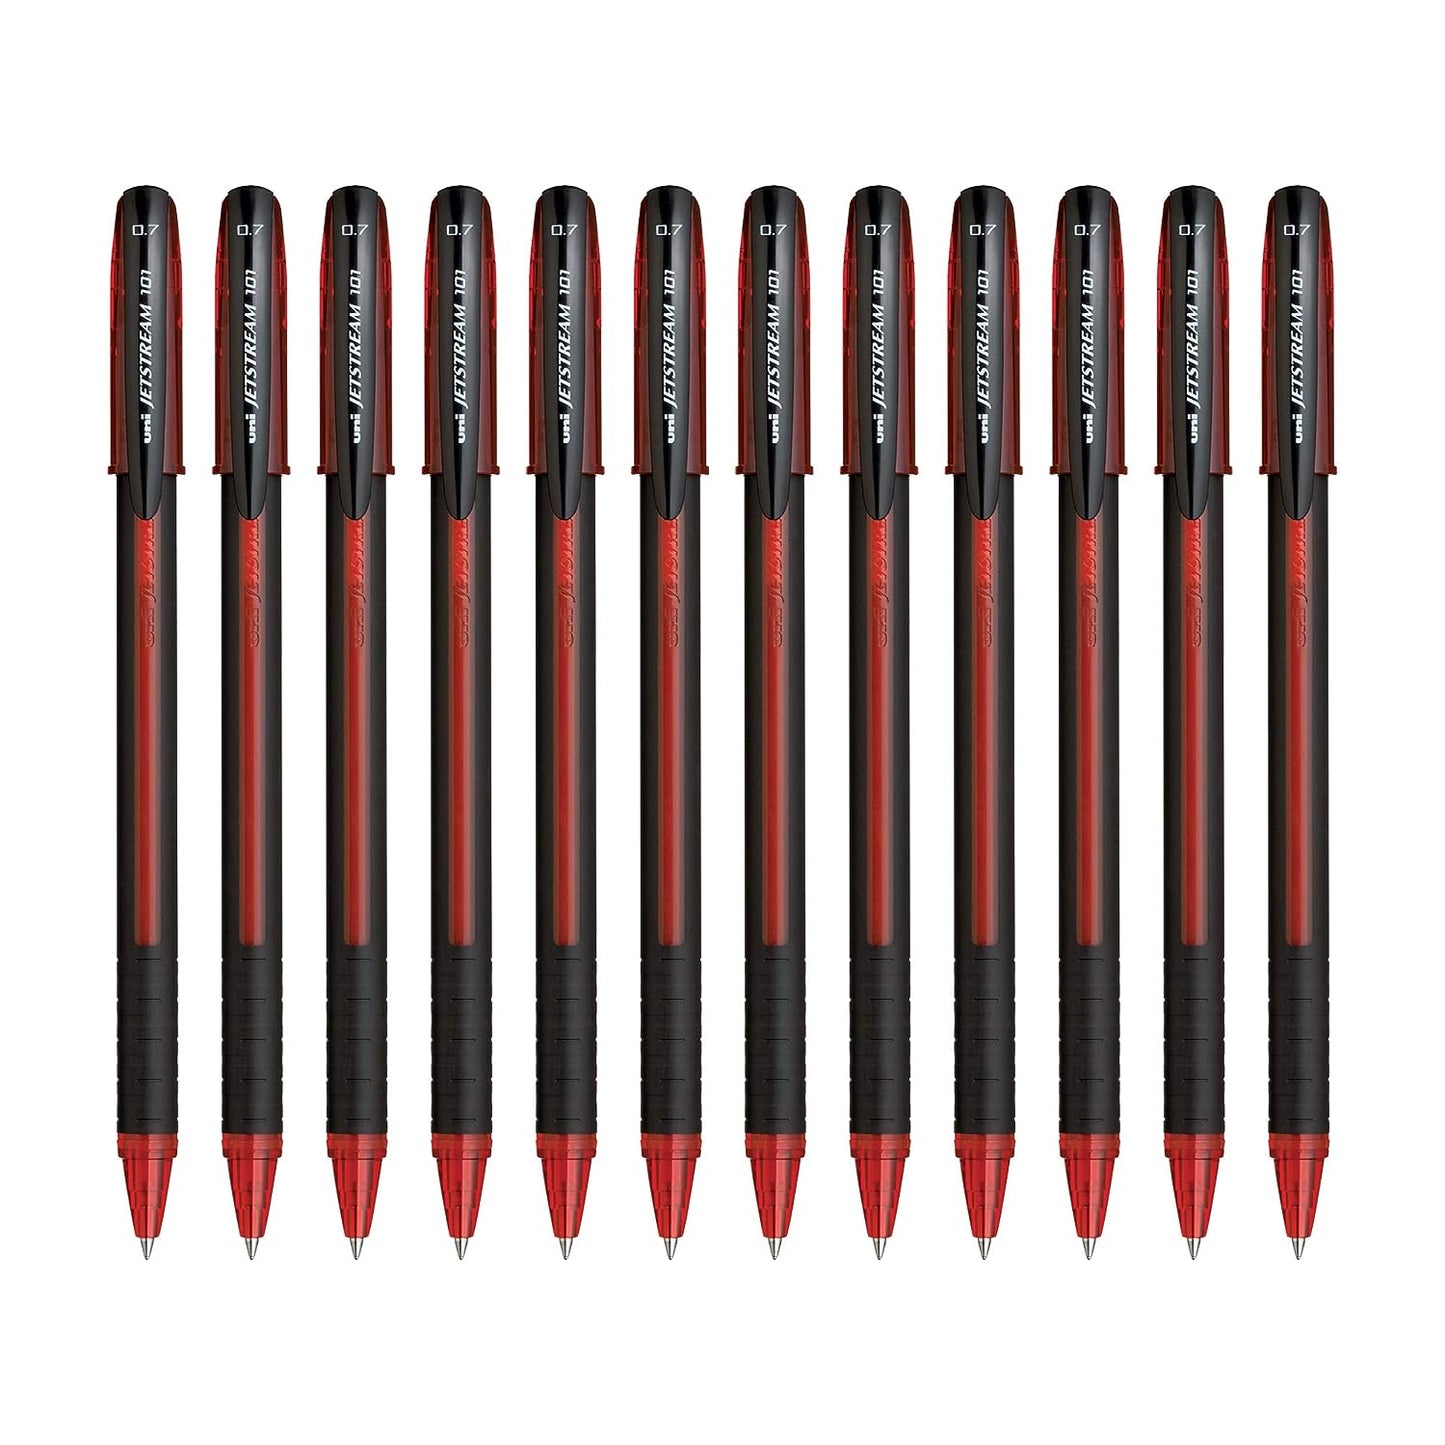 UniBall Jetstream Sx101 Roller Ball Pen - Red Ink